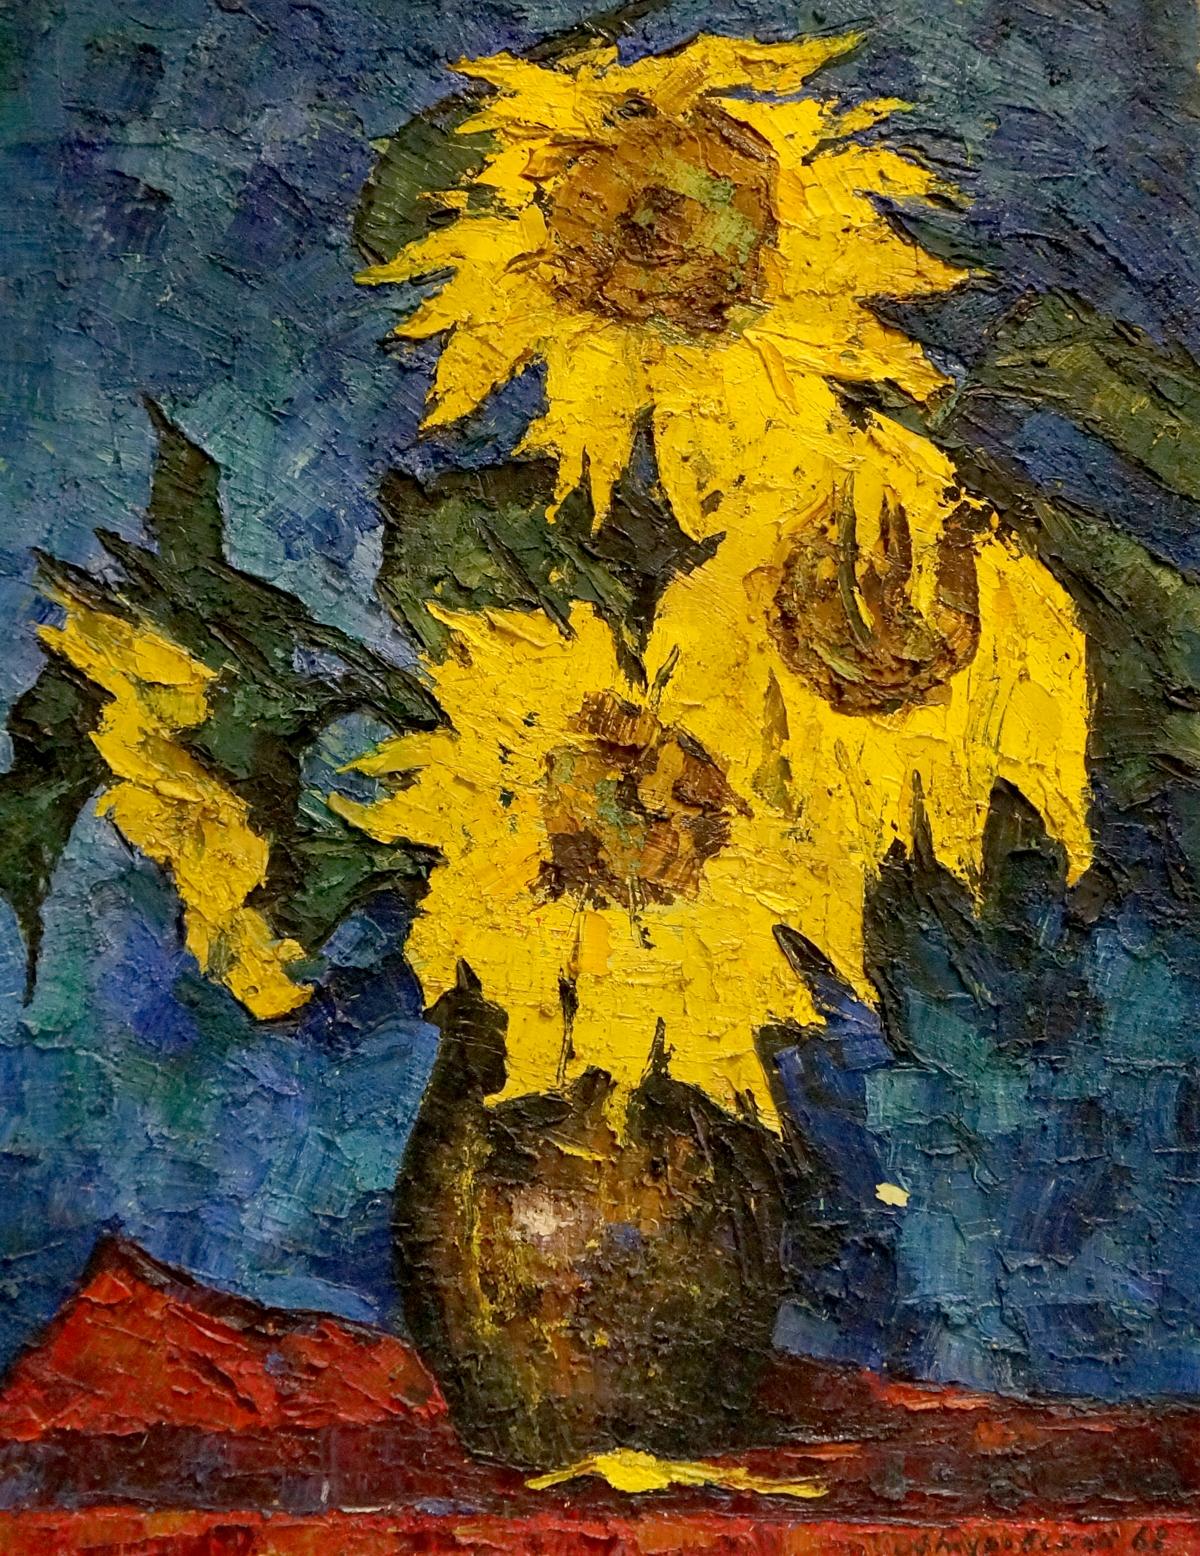 Oil painting Sunflowers Turovsky Anatoly Saulovich